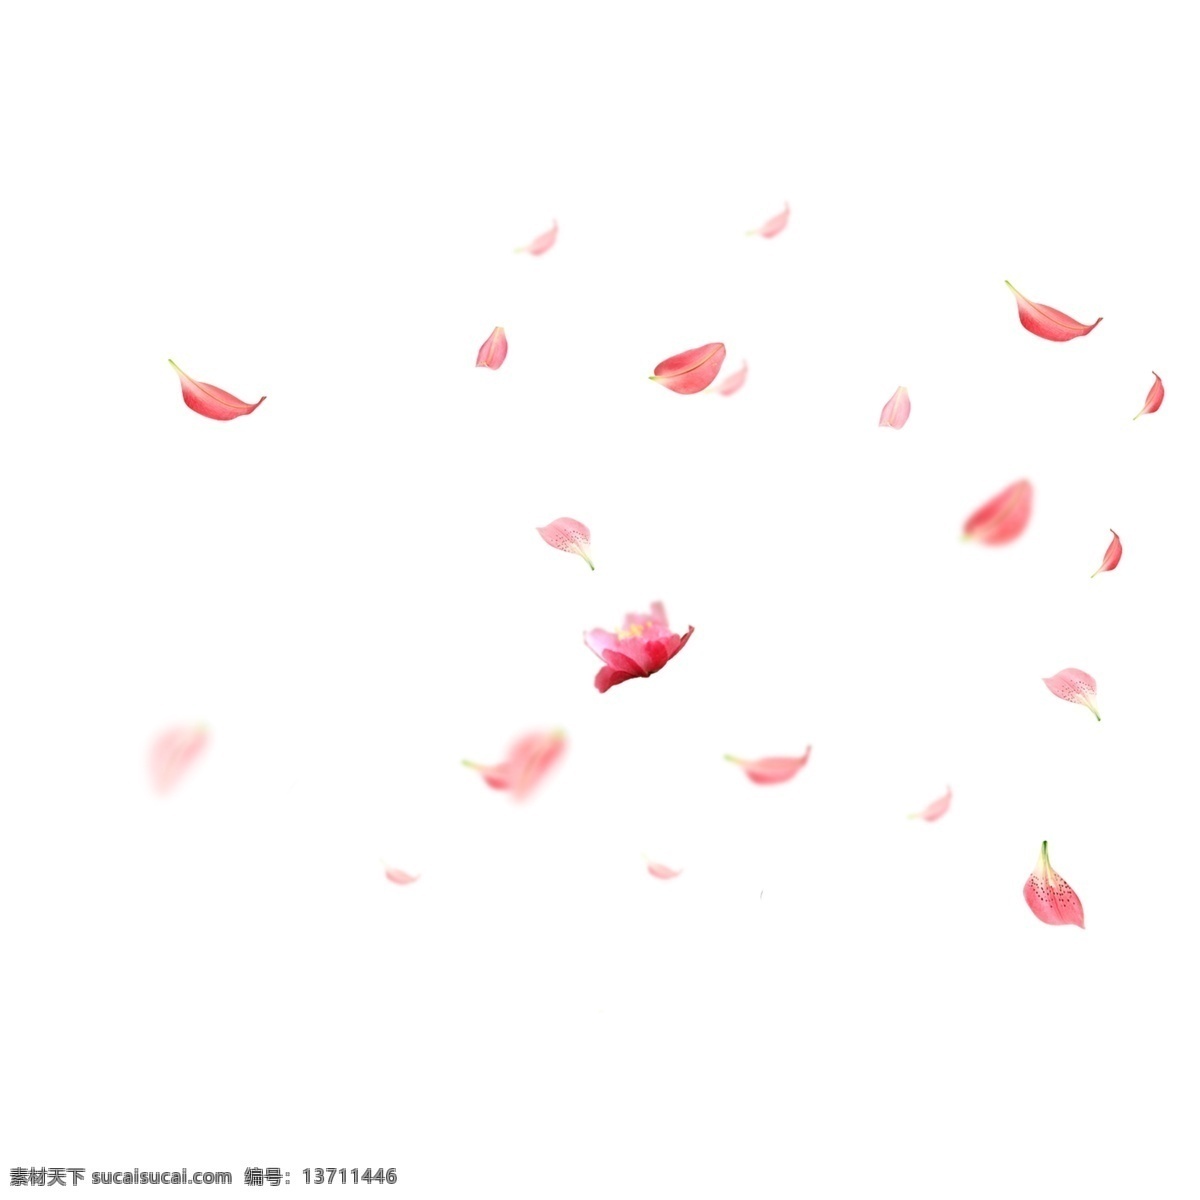 花瓣飘落 花瓣 粉色 玫瑰花瓣 落花 效果 花素材